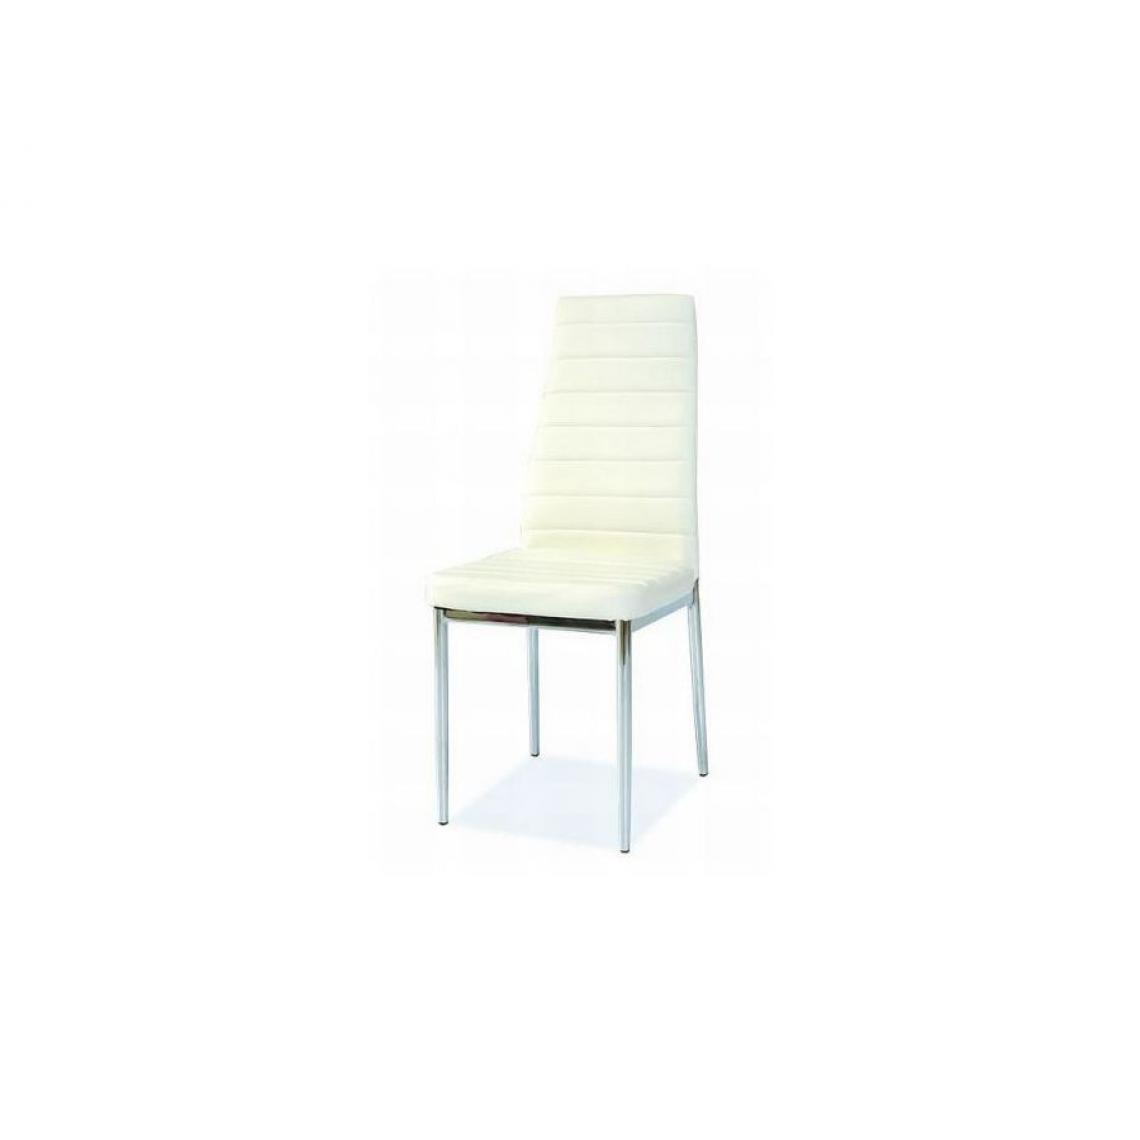 Hucoco - JOSSAN | Chaise élégante salle à manger et salon | Dimensions : 96x40x38 cm | Rembourrage en cuir écologique | Style moderne - Blanc - Chaises